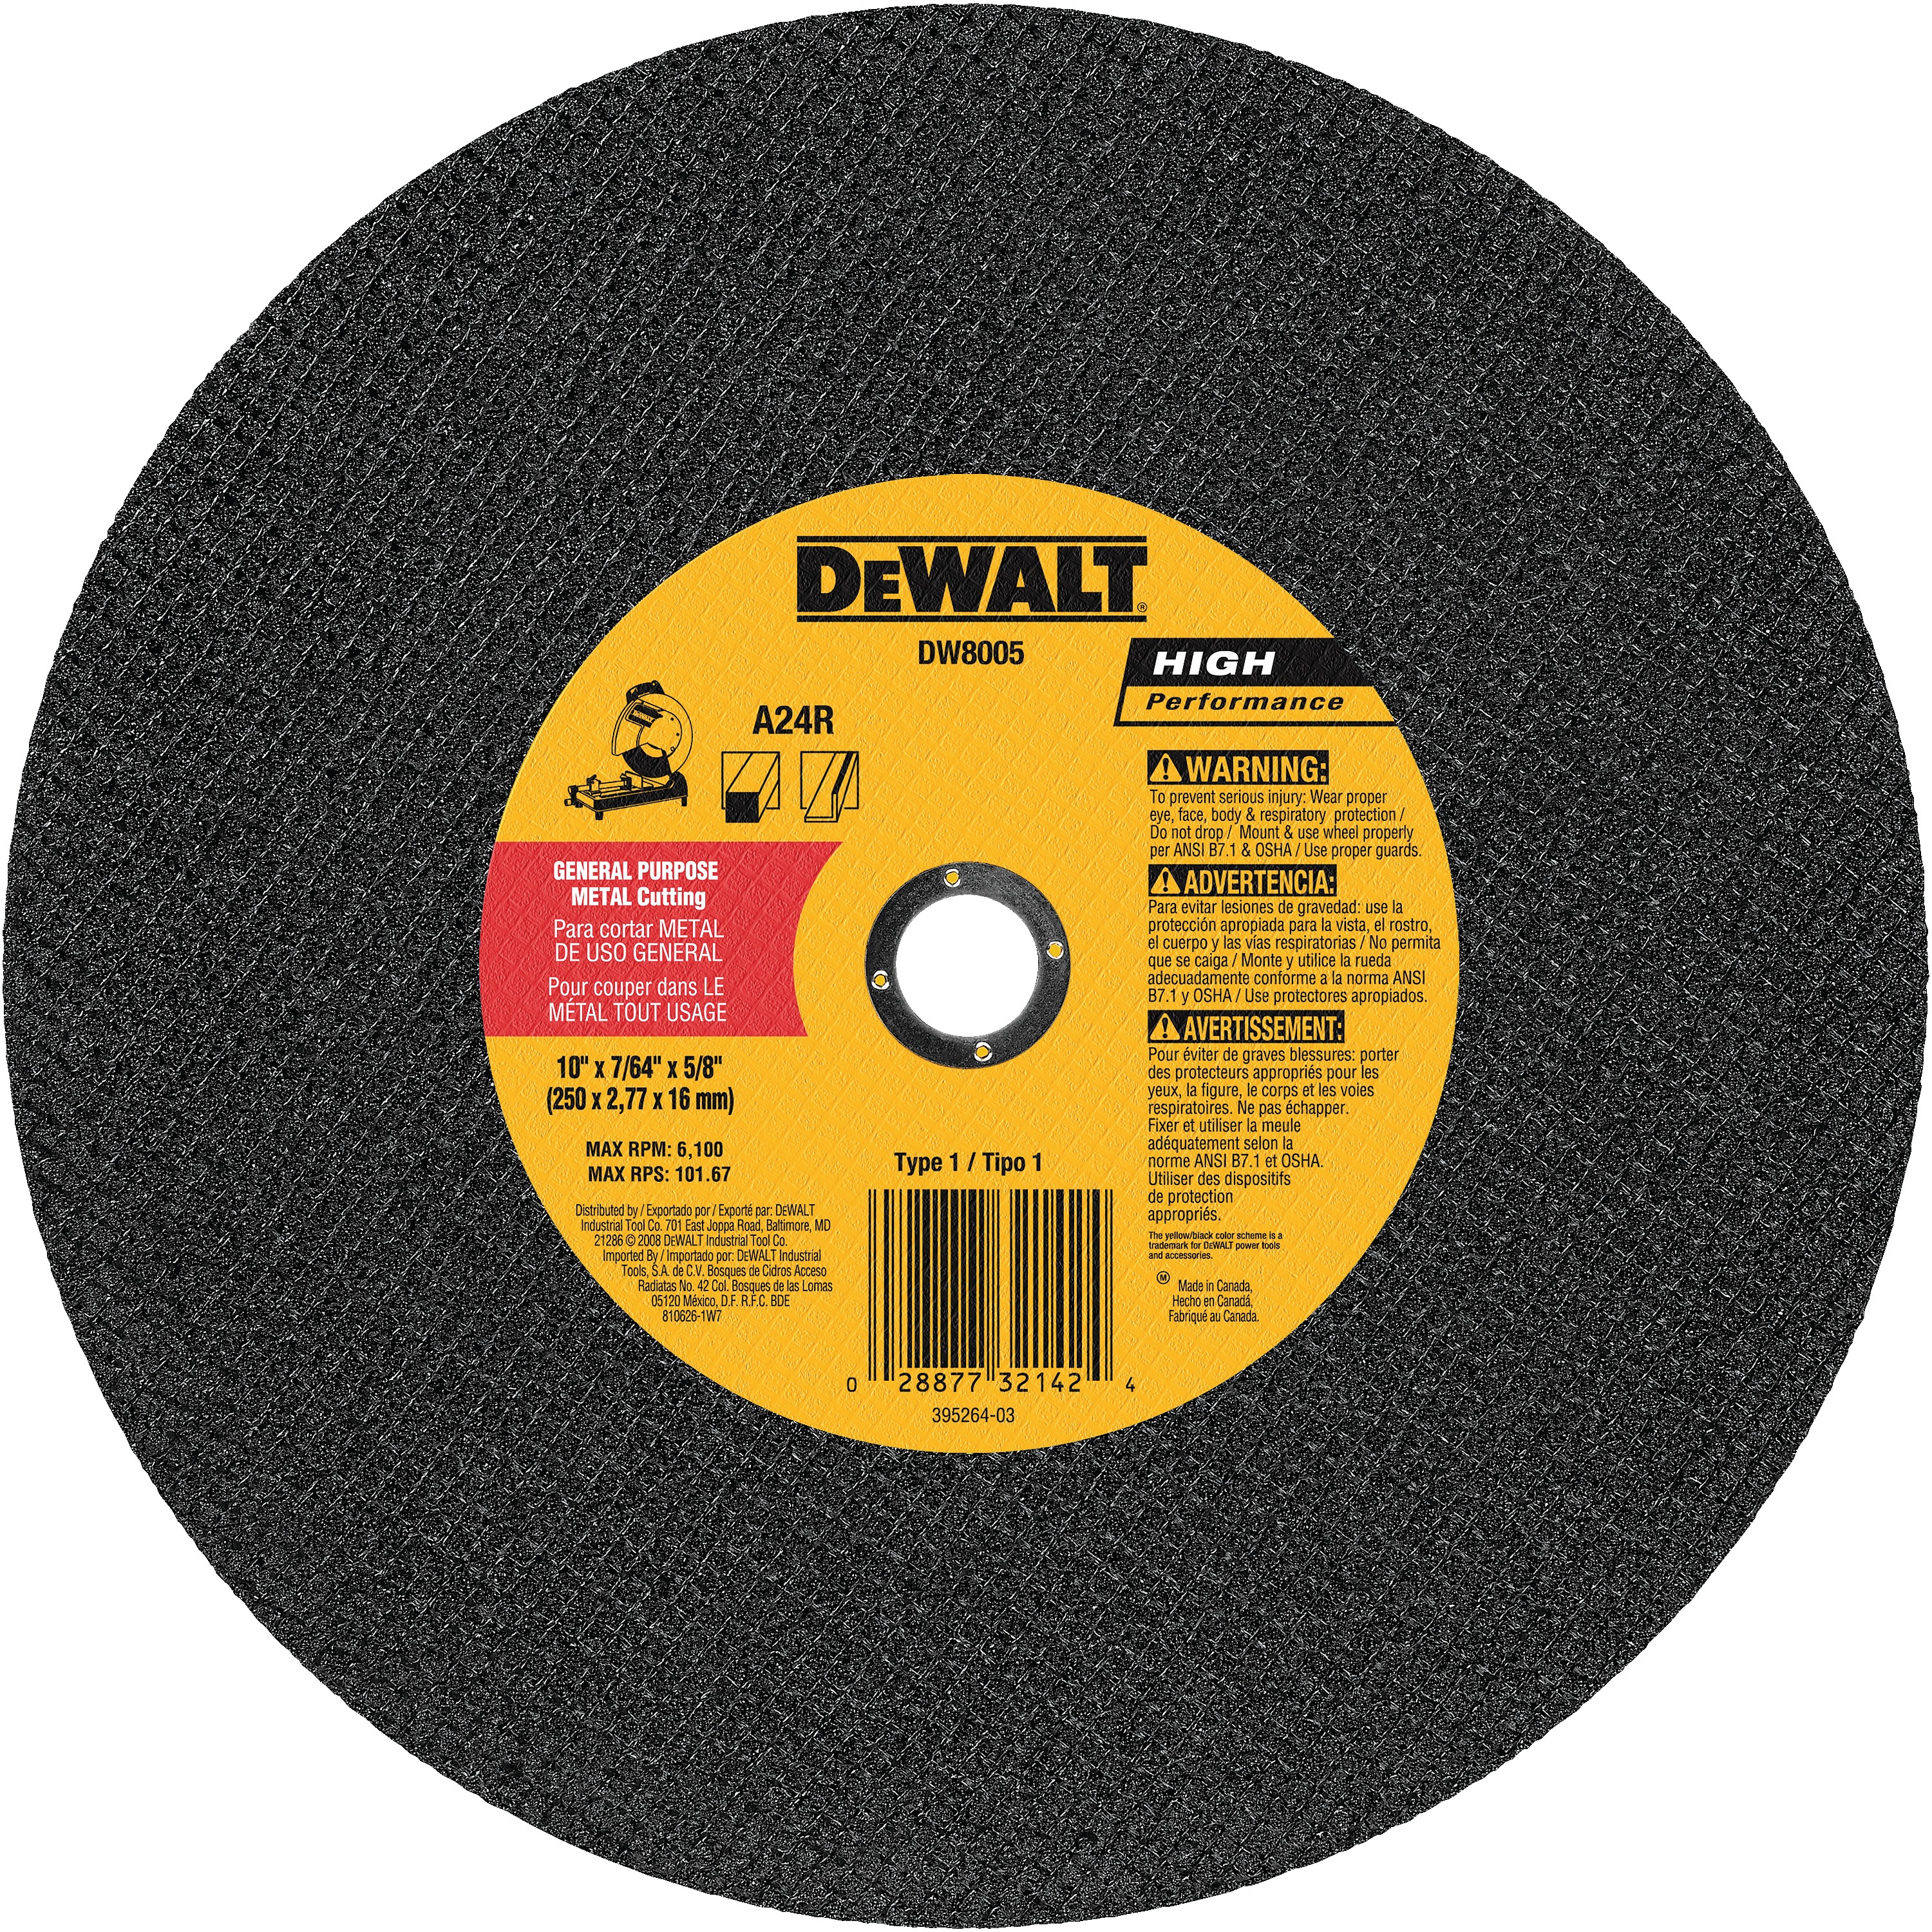 DEWALT DW8005 Metal Cutting CHOP Saw Wheel for sale online